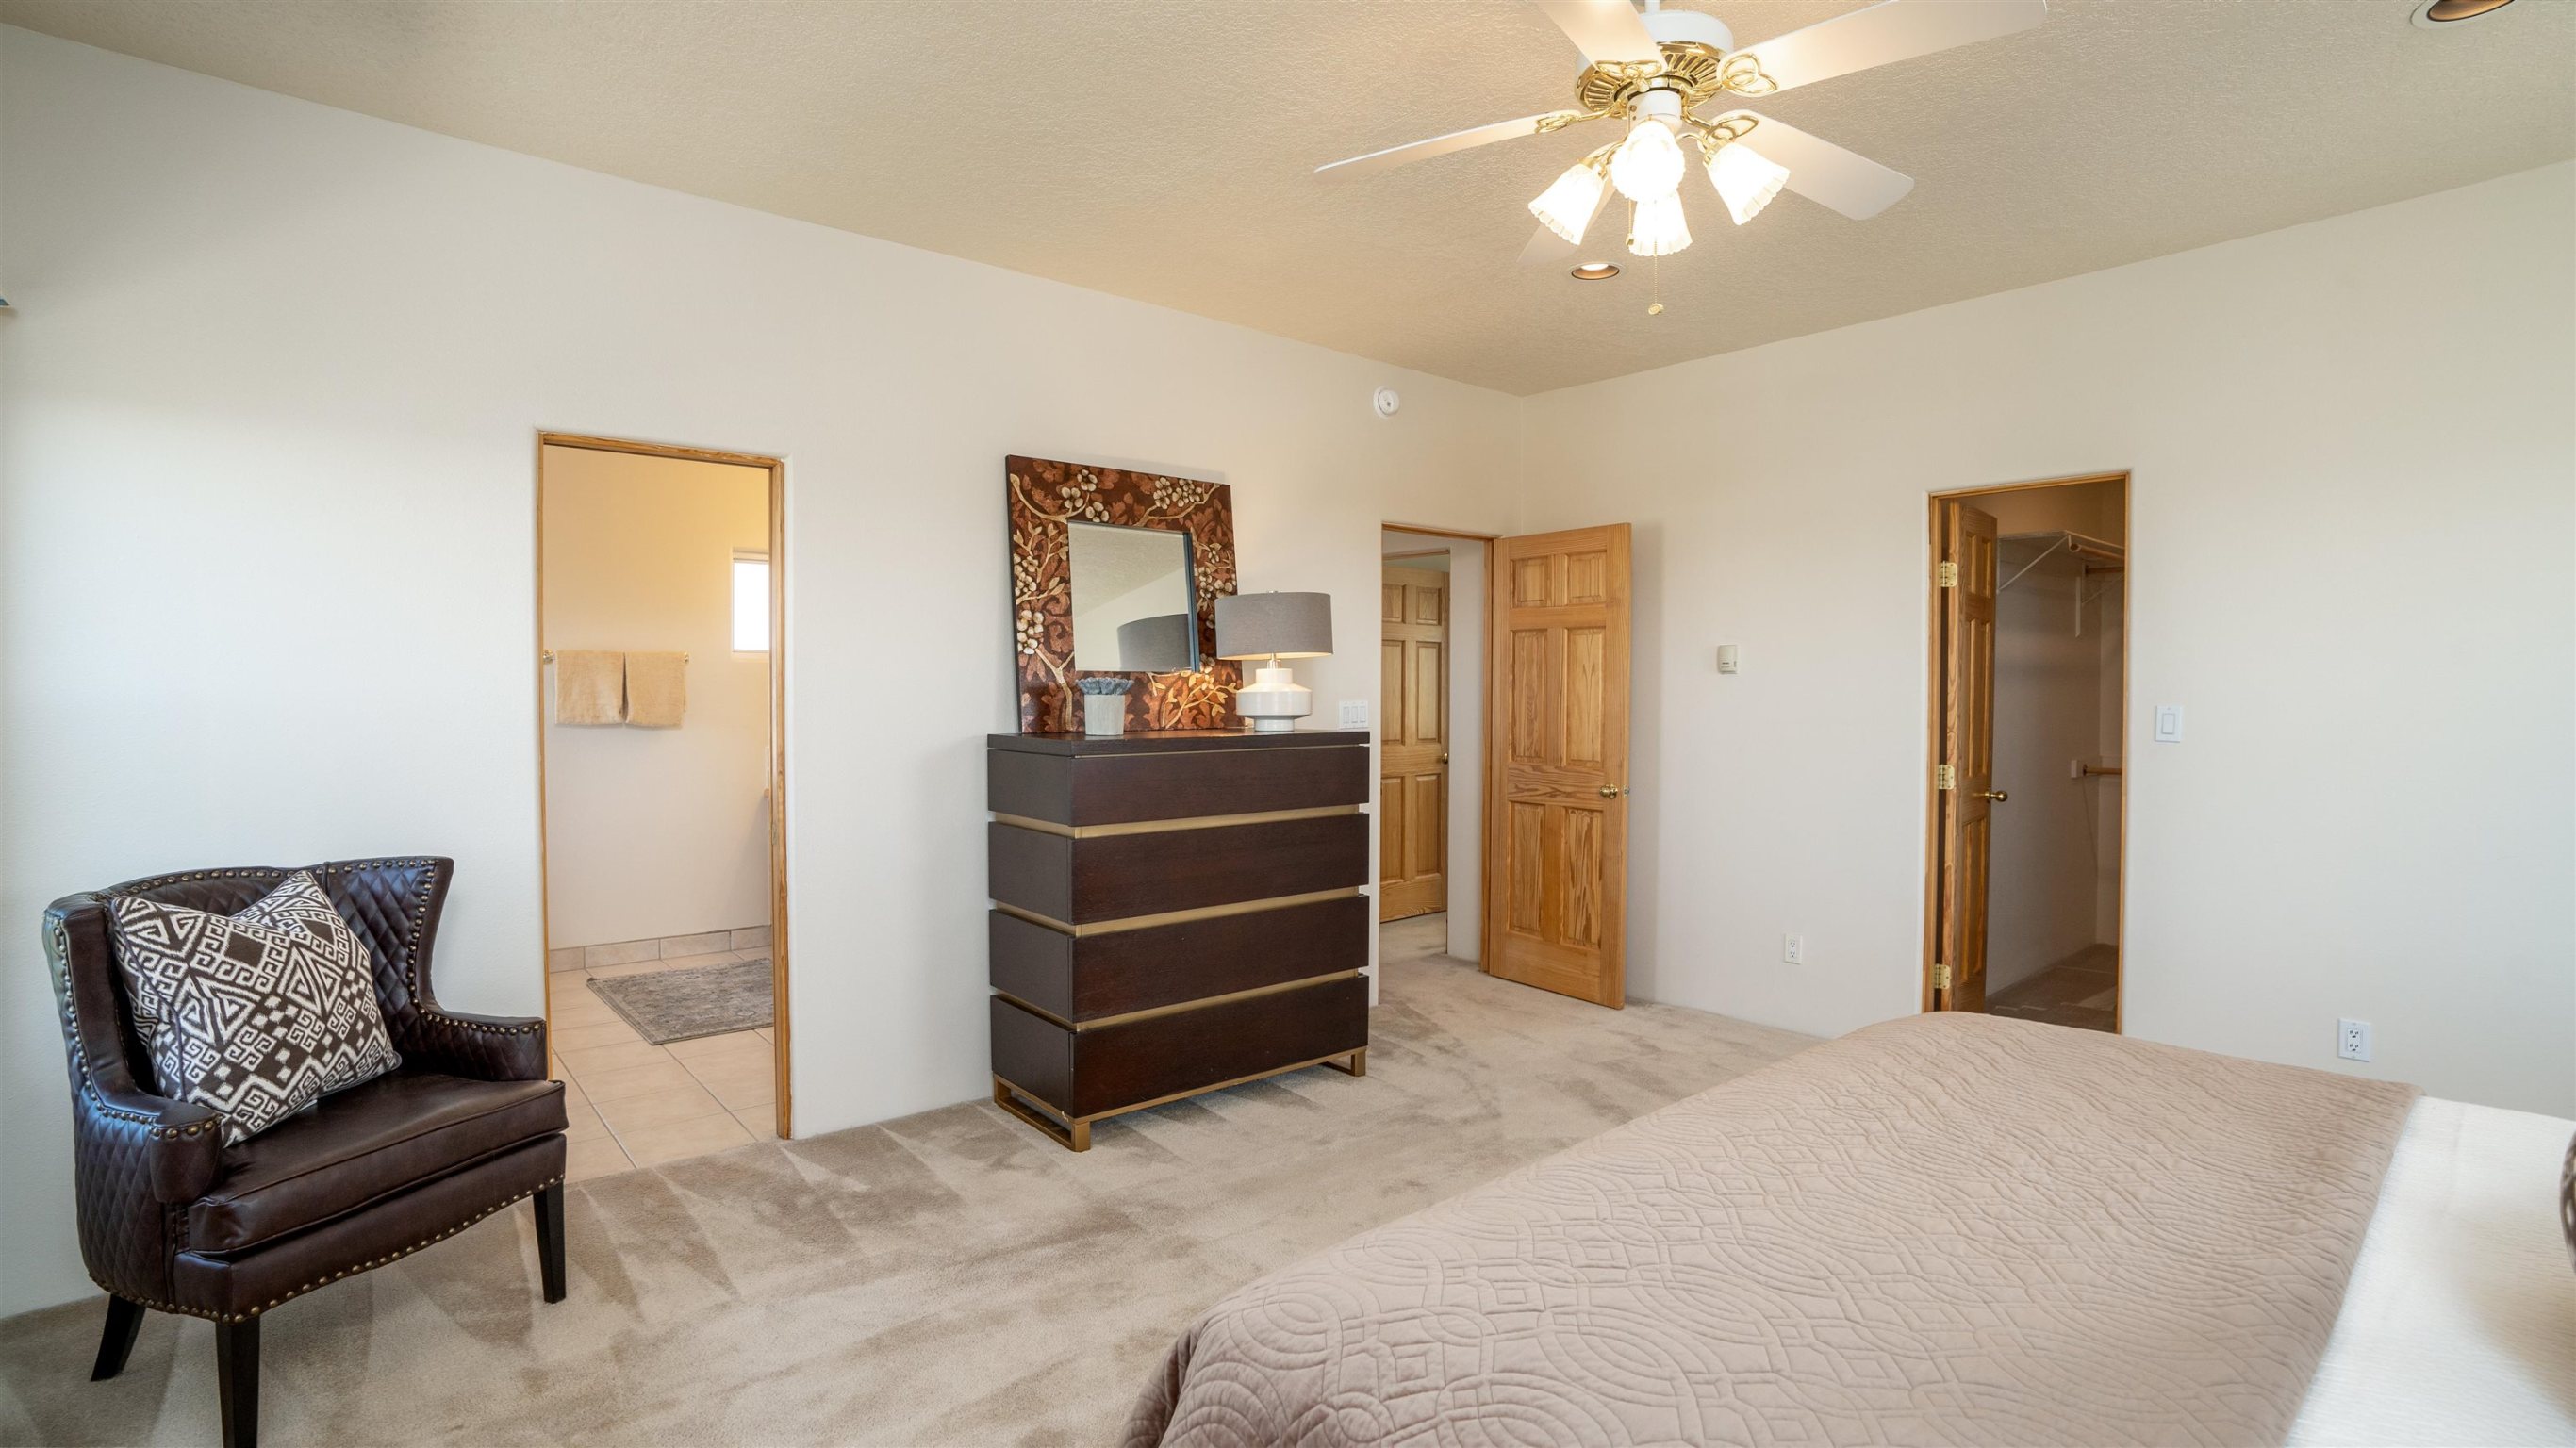 3044 PUEBLO GRANDE, Santa Fe, New Mexico 87507, 3 Bedrooms Bedrooms, ,2 BathroomsBathrooms,Residential,For Sale,3044 PUEBLO GRANDE,202201387